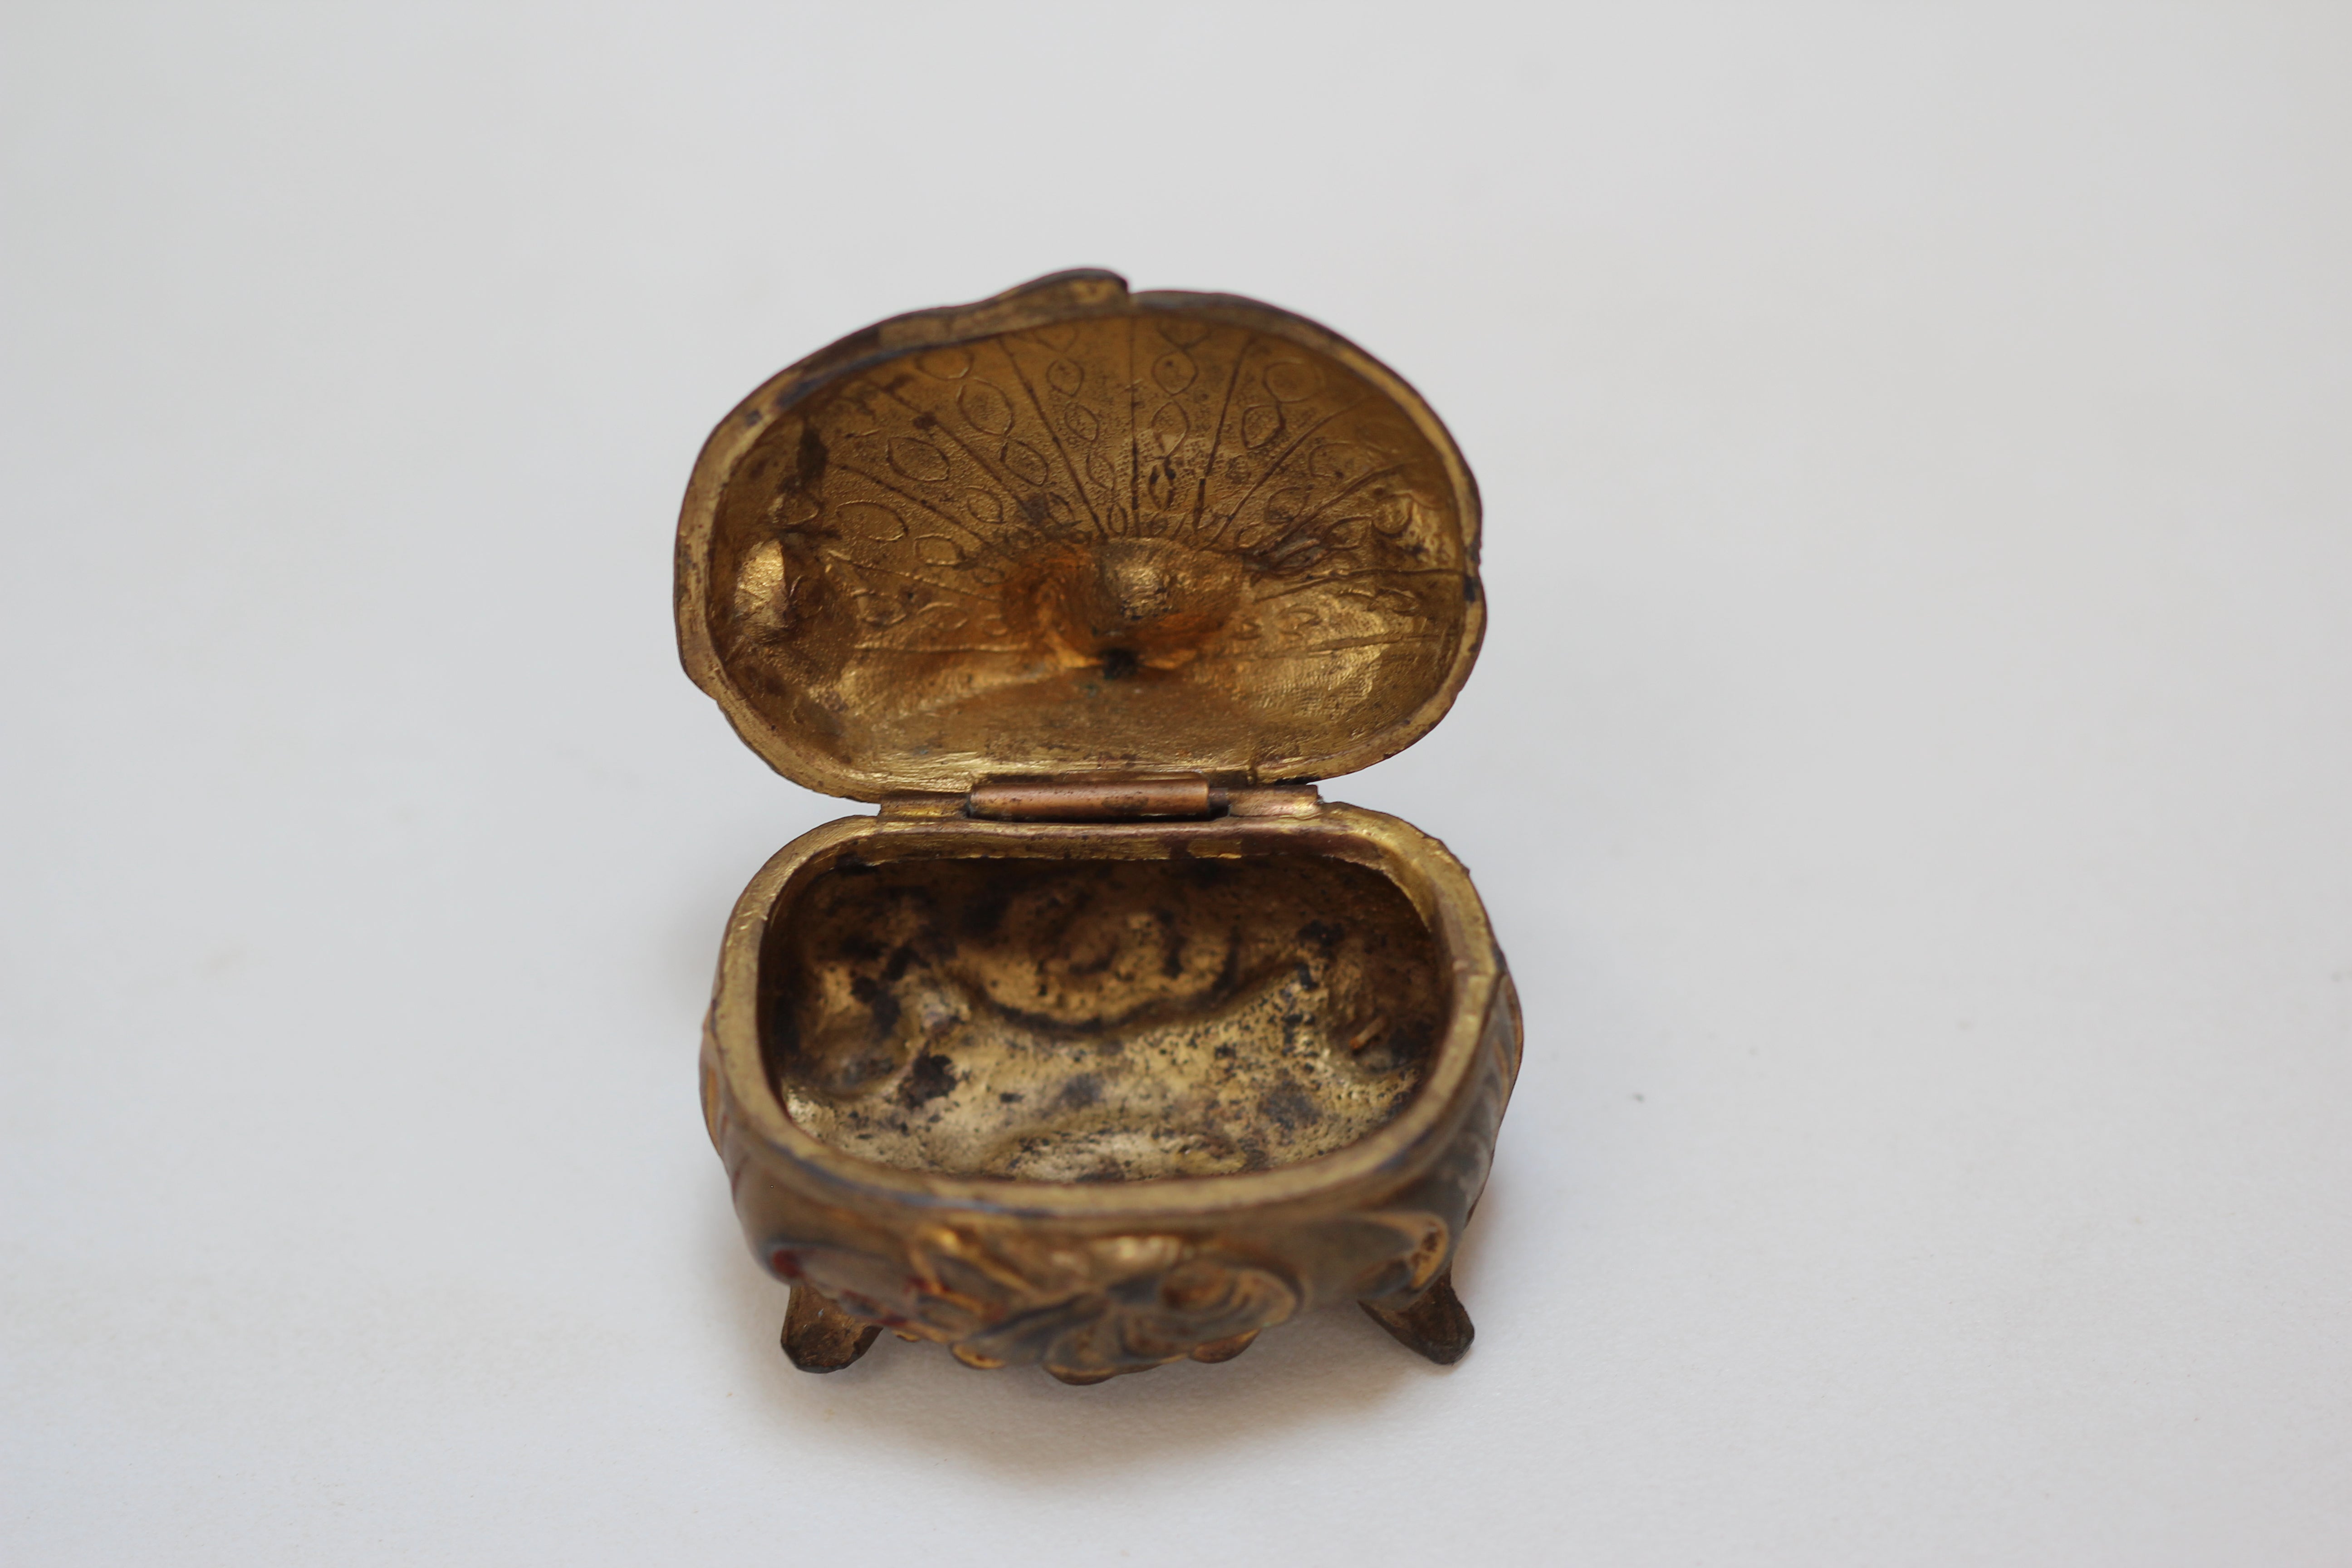 Antique Miniature Art Nouveau Jewelry Box